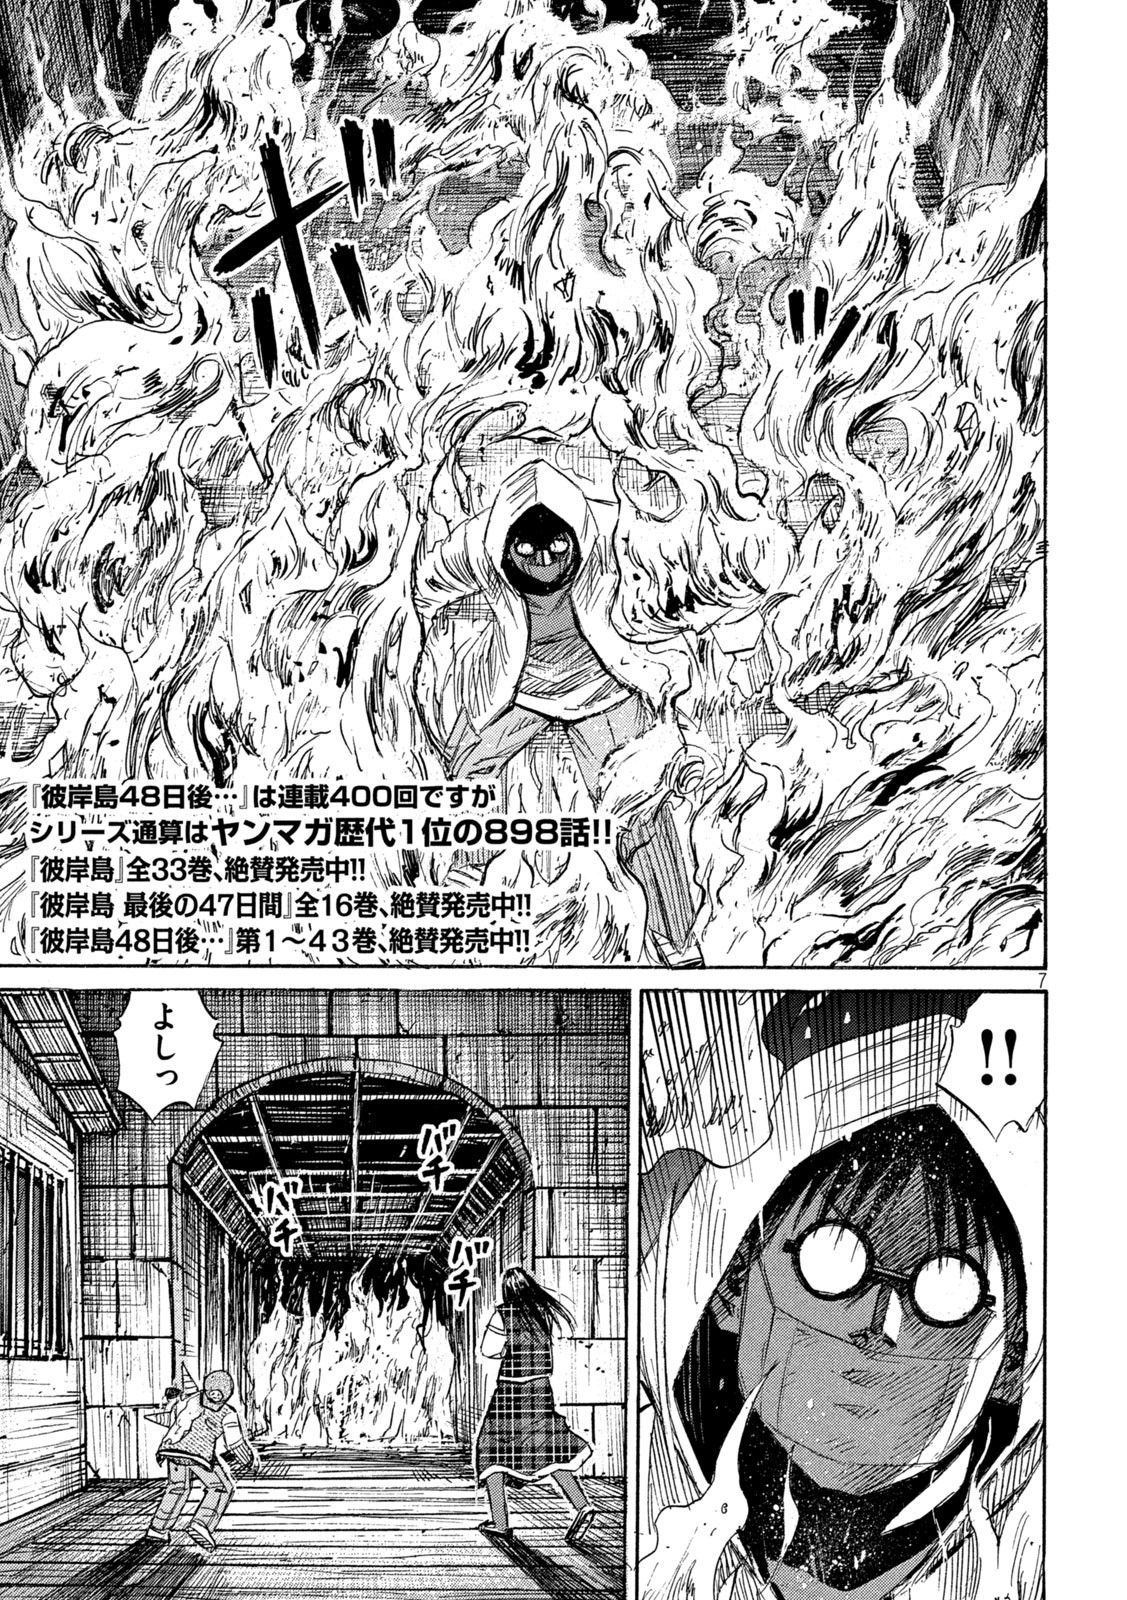 彼岸島48日後… 第400話 を早く読む mangakoma - manga1001 - 漫画ロウ 